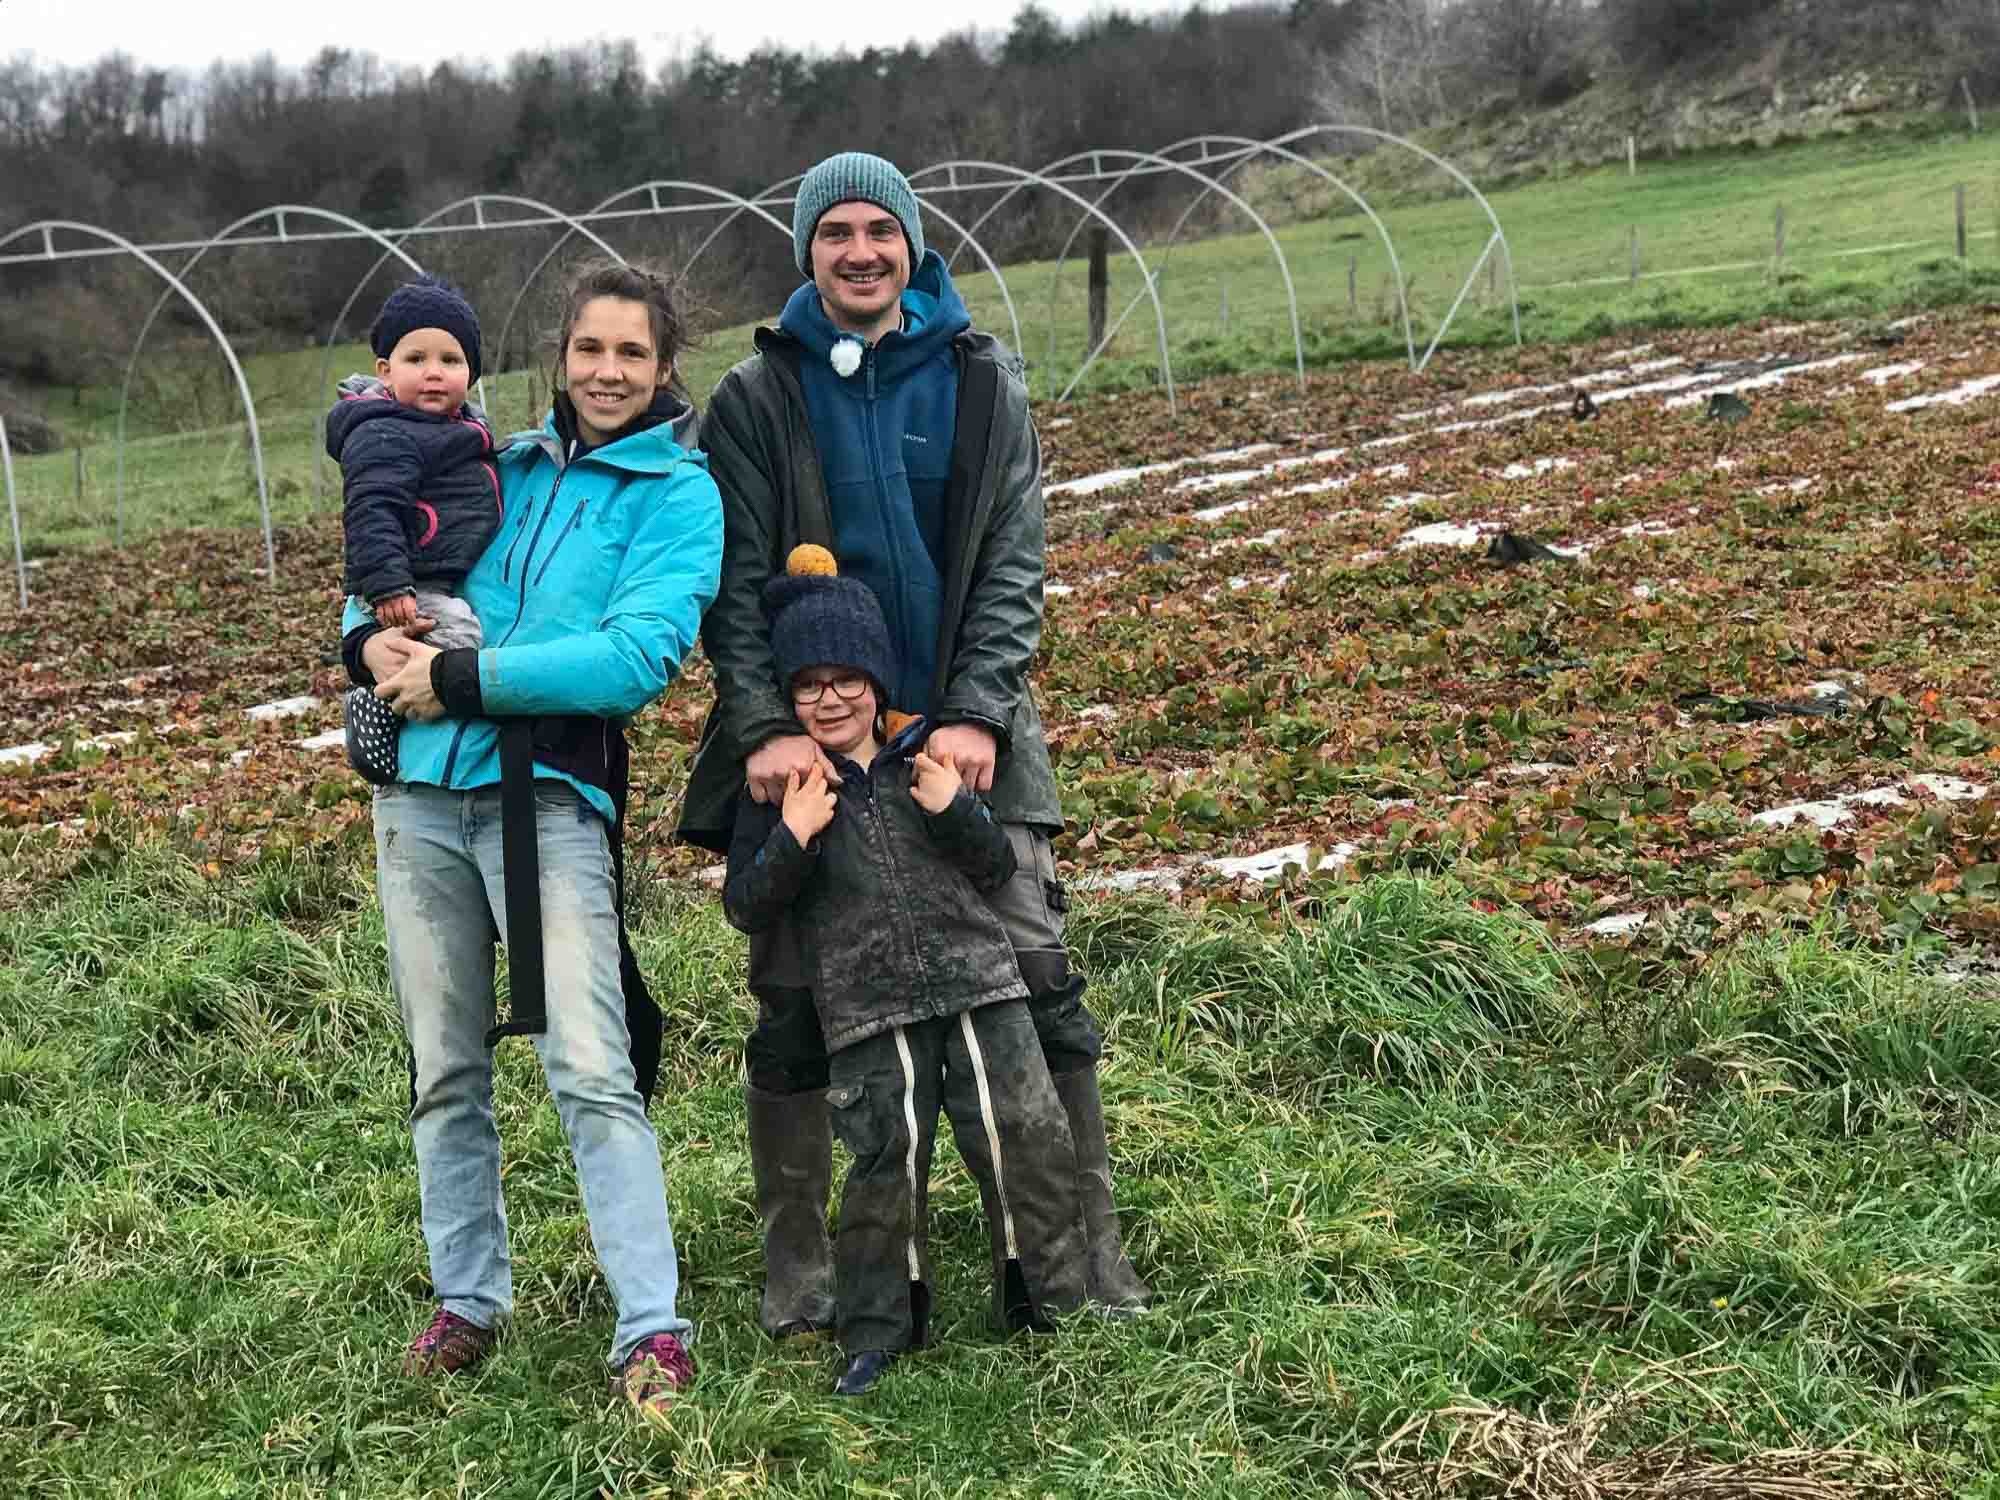 Purée Pomme Framboise des Monts Lyonnais - bio et équitable